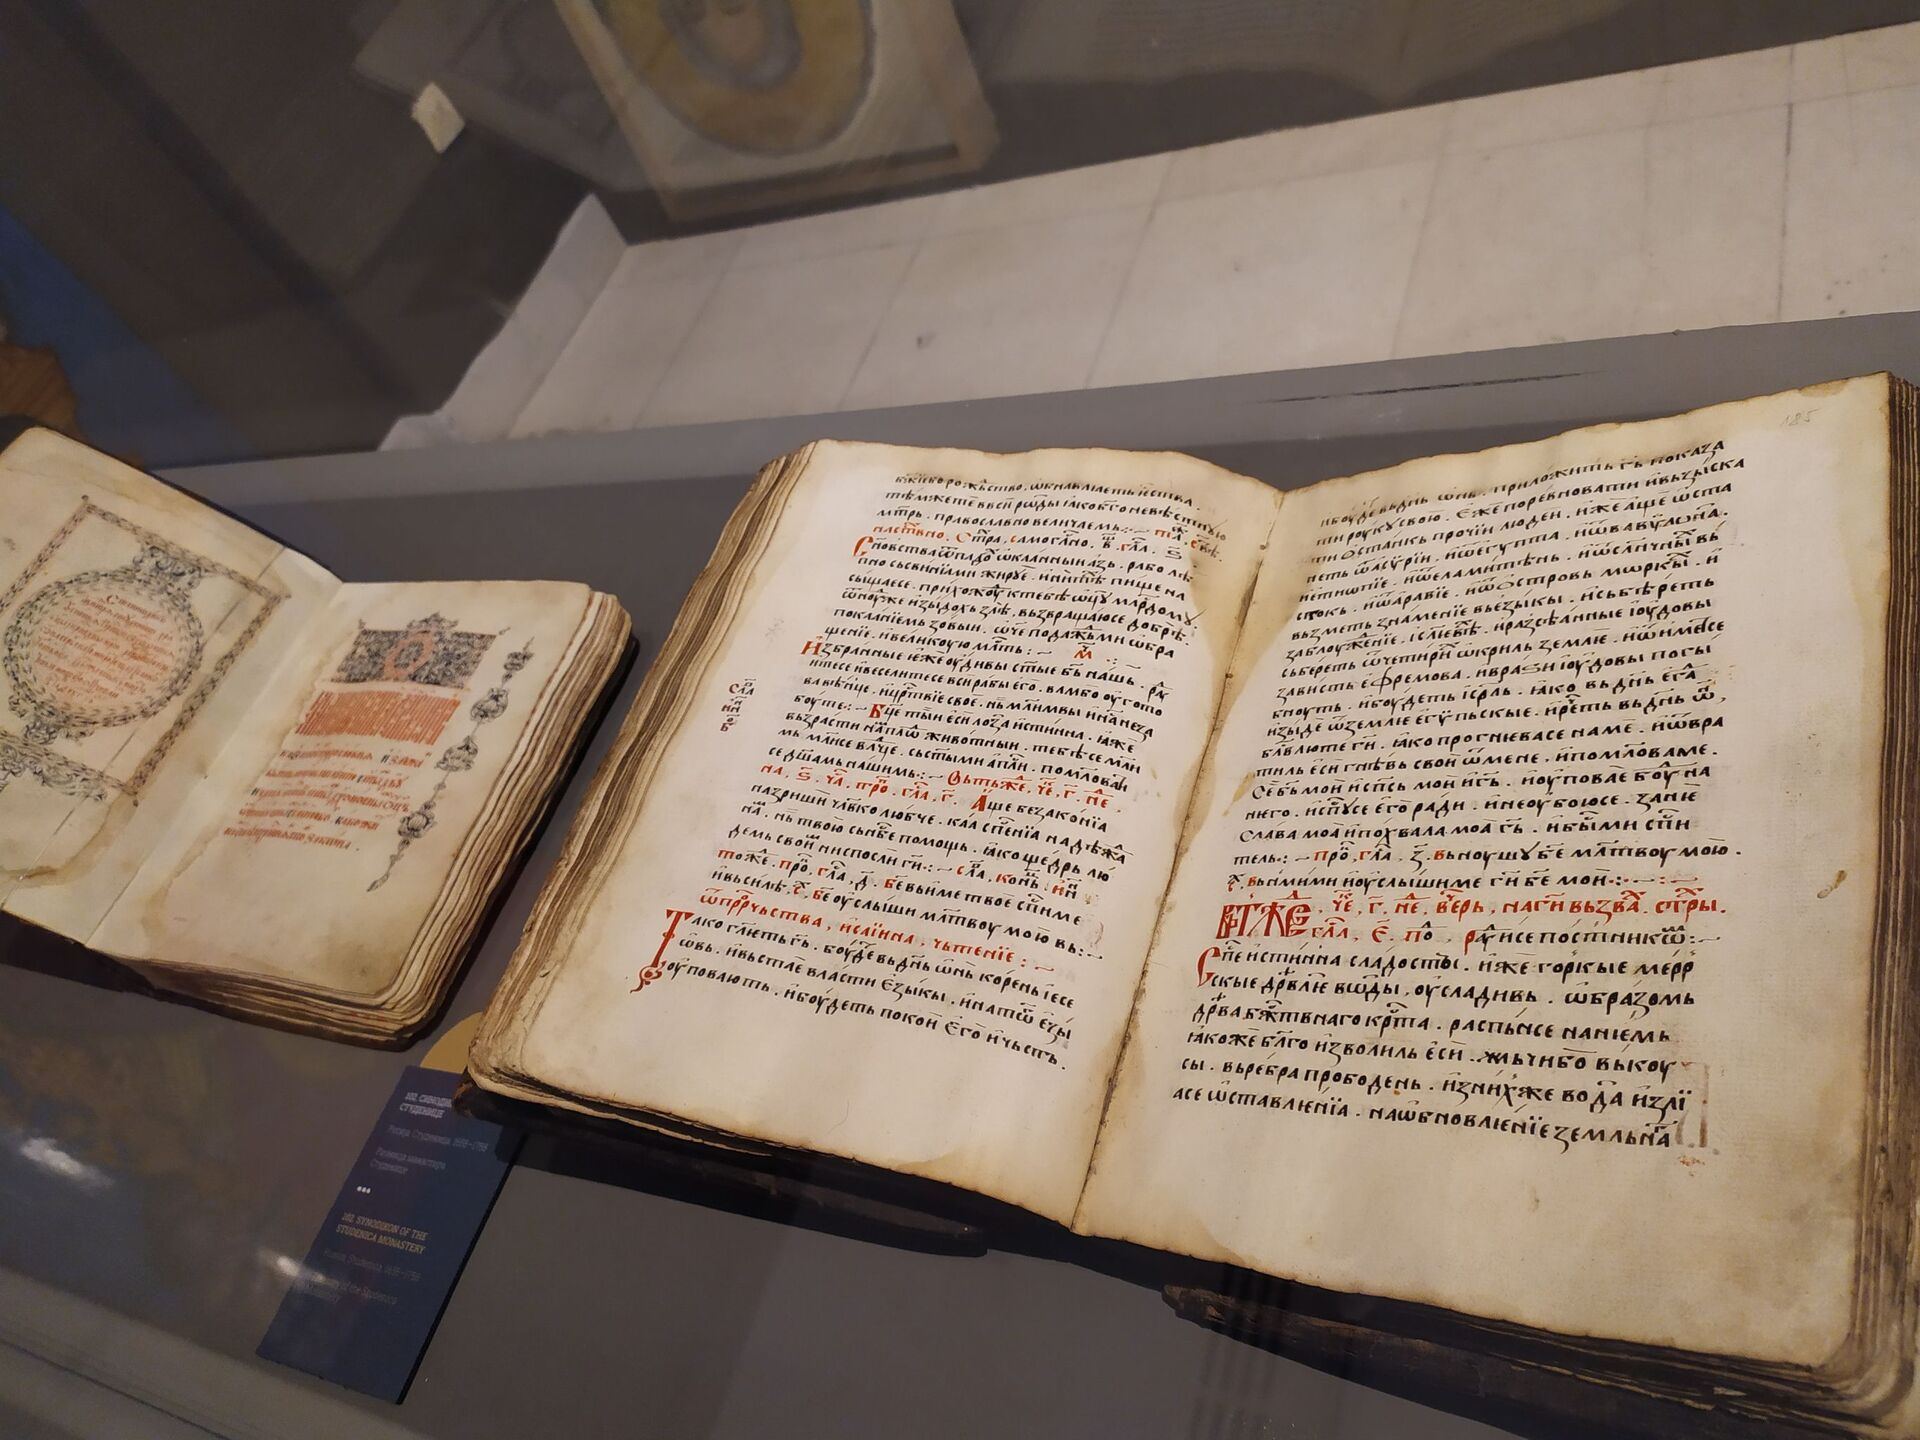 Стари рукописи из манастира Студеница изложени у галерији САНУ - Sputnik Србија, 1920, 26.11.2021